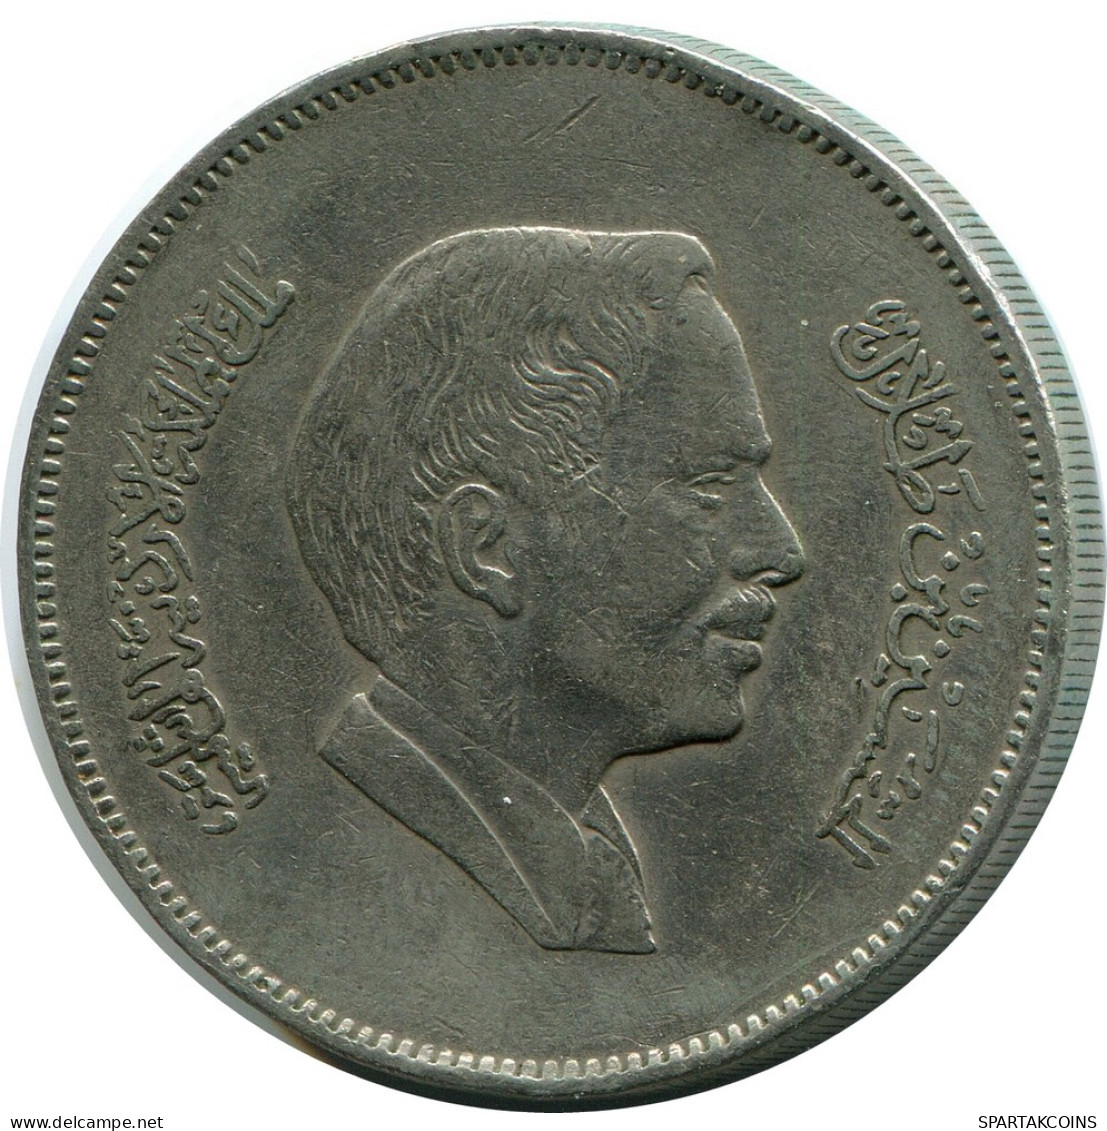 1 DIRHAM / 100 FILS 1981 JORDAN Coin #AP101.U - Jordan